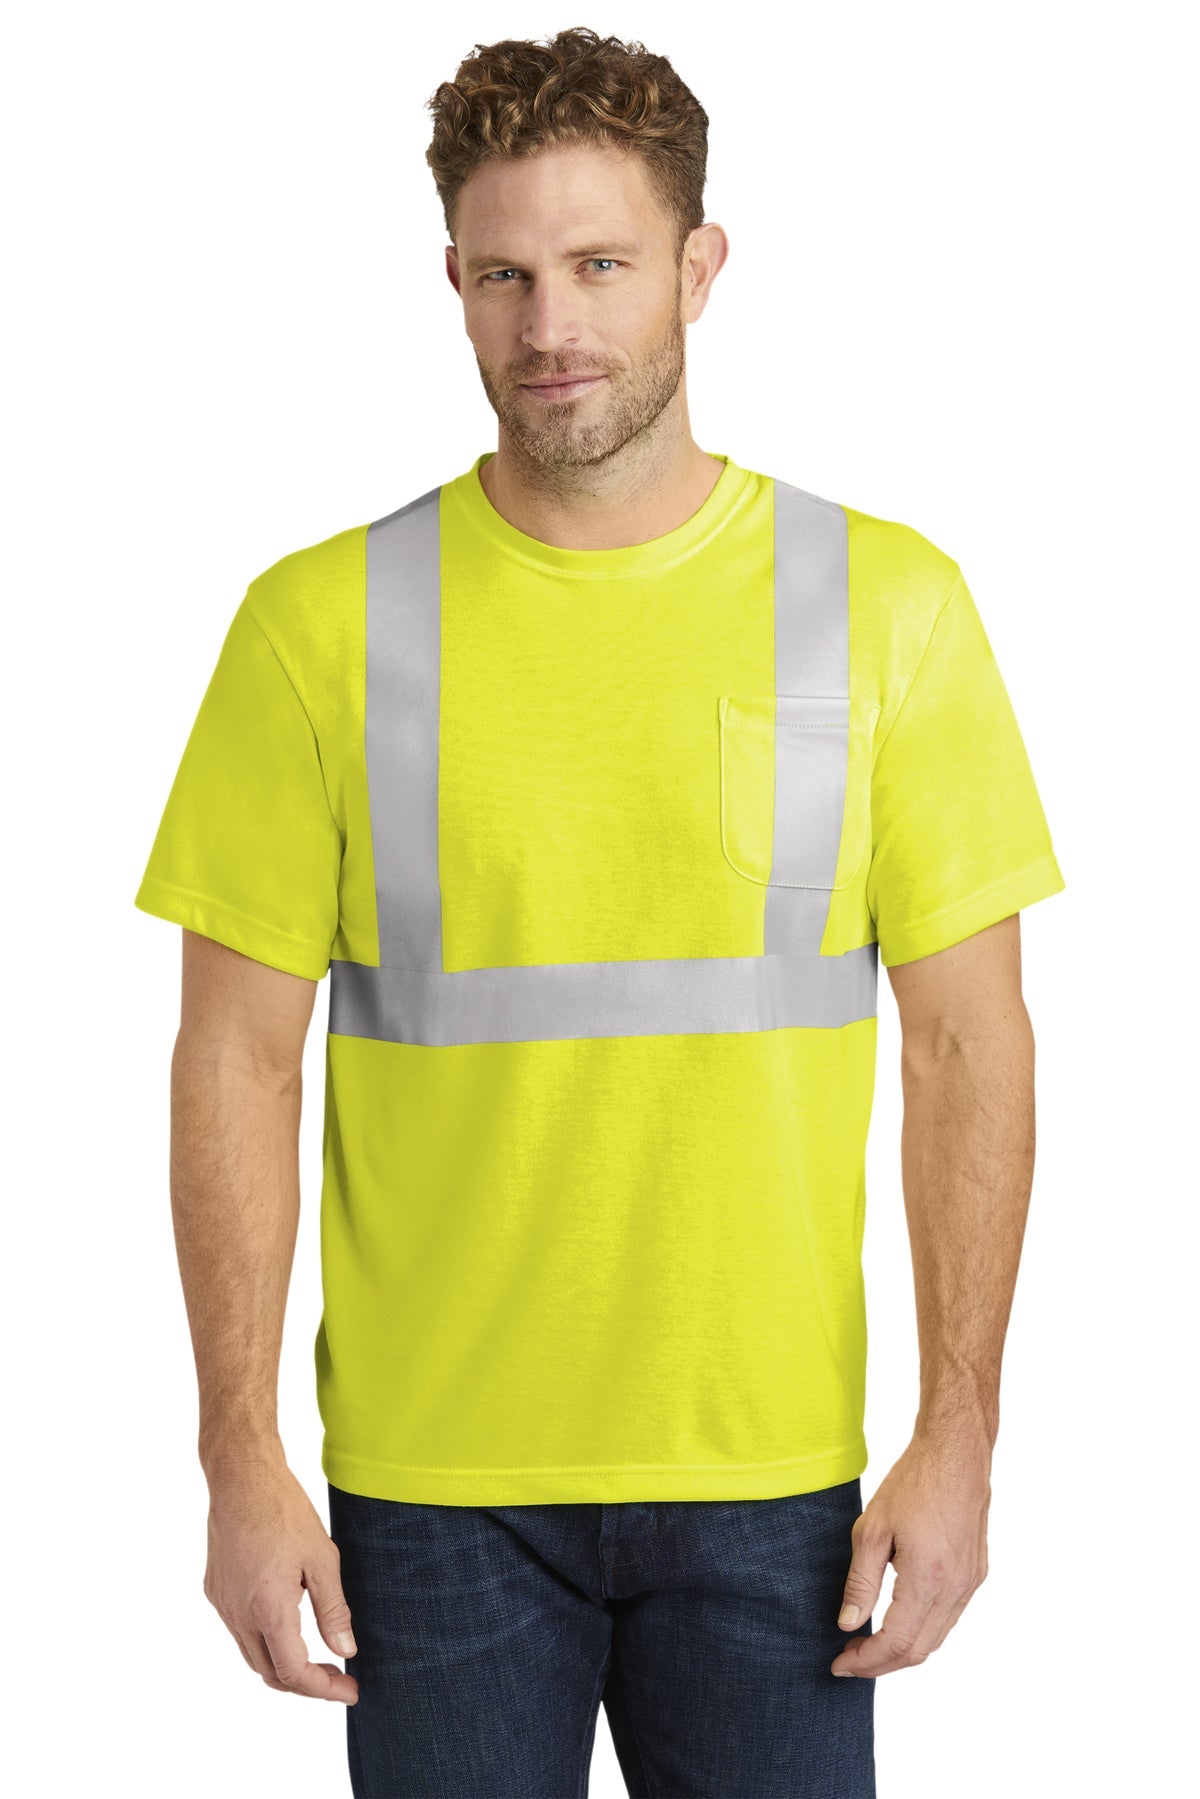 CornerStone - ANSI 107 Class 2 Safety T-Shirt